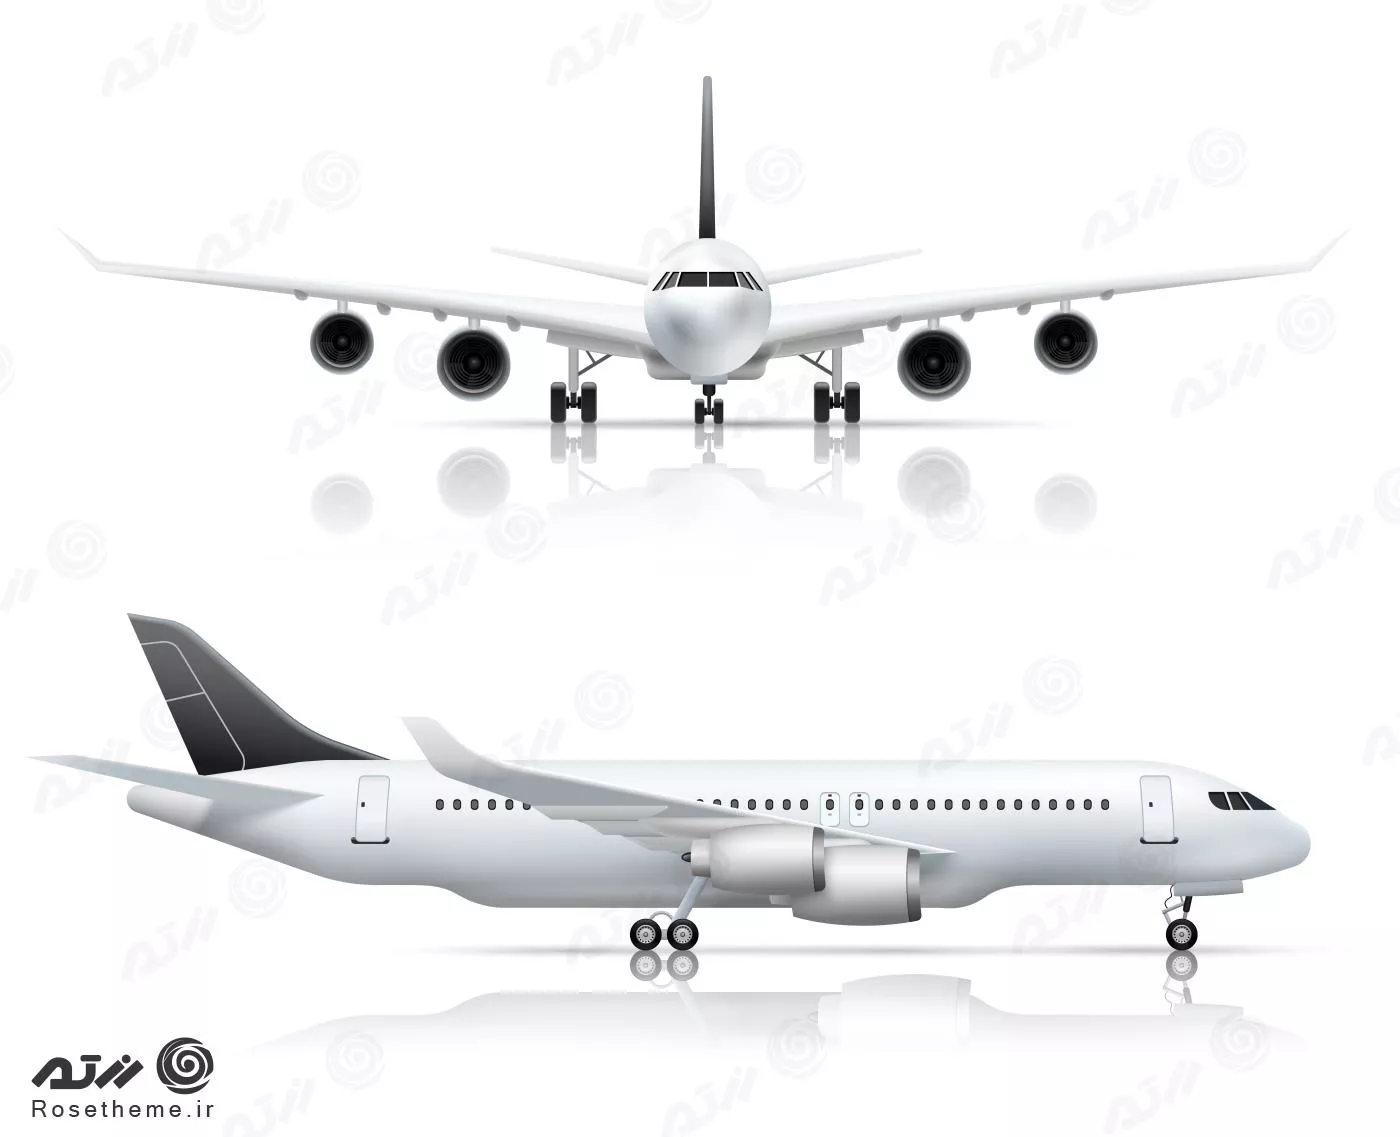 وکتور رایگان EPS لایه باز طرح گرافیکی هواپیما از ۲ زاویه مختلف 21909